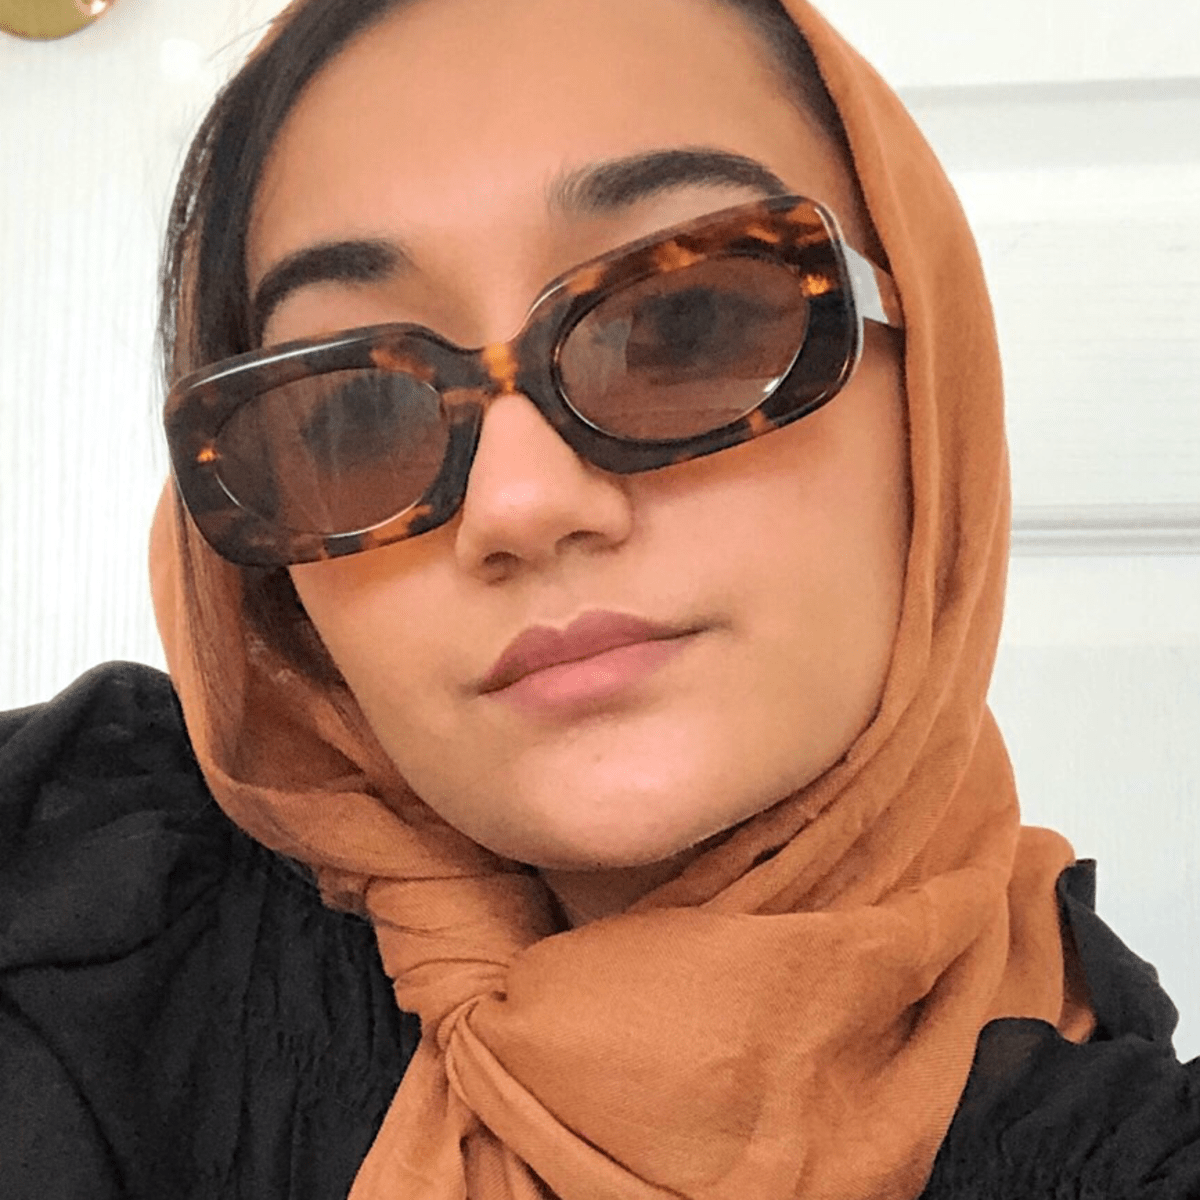 Girl In Hijab Framed At Hair Salon | @DramatizeMe - YouTube